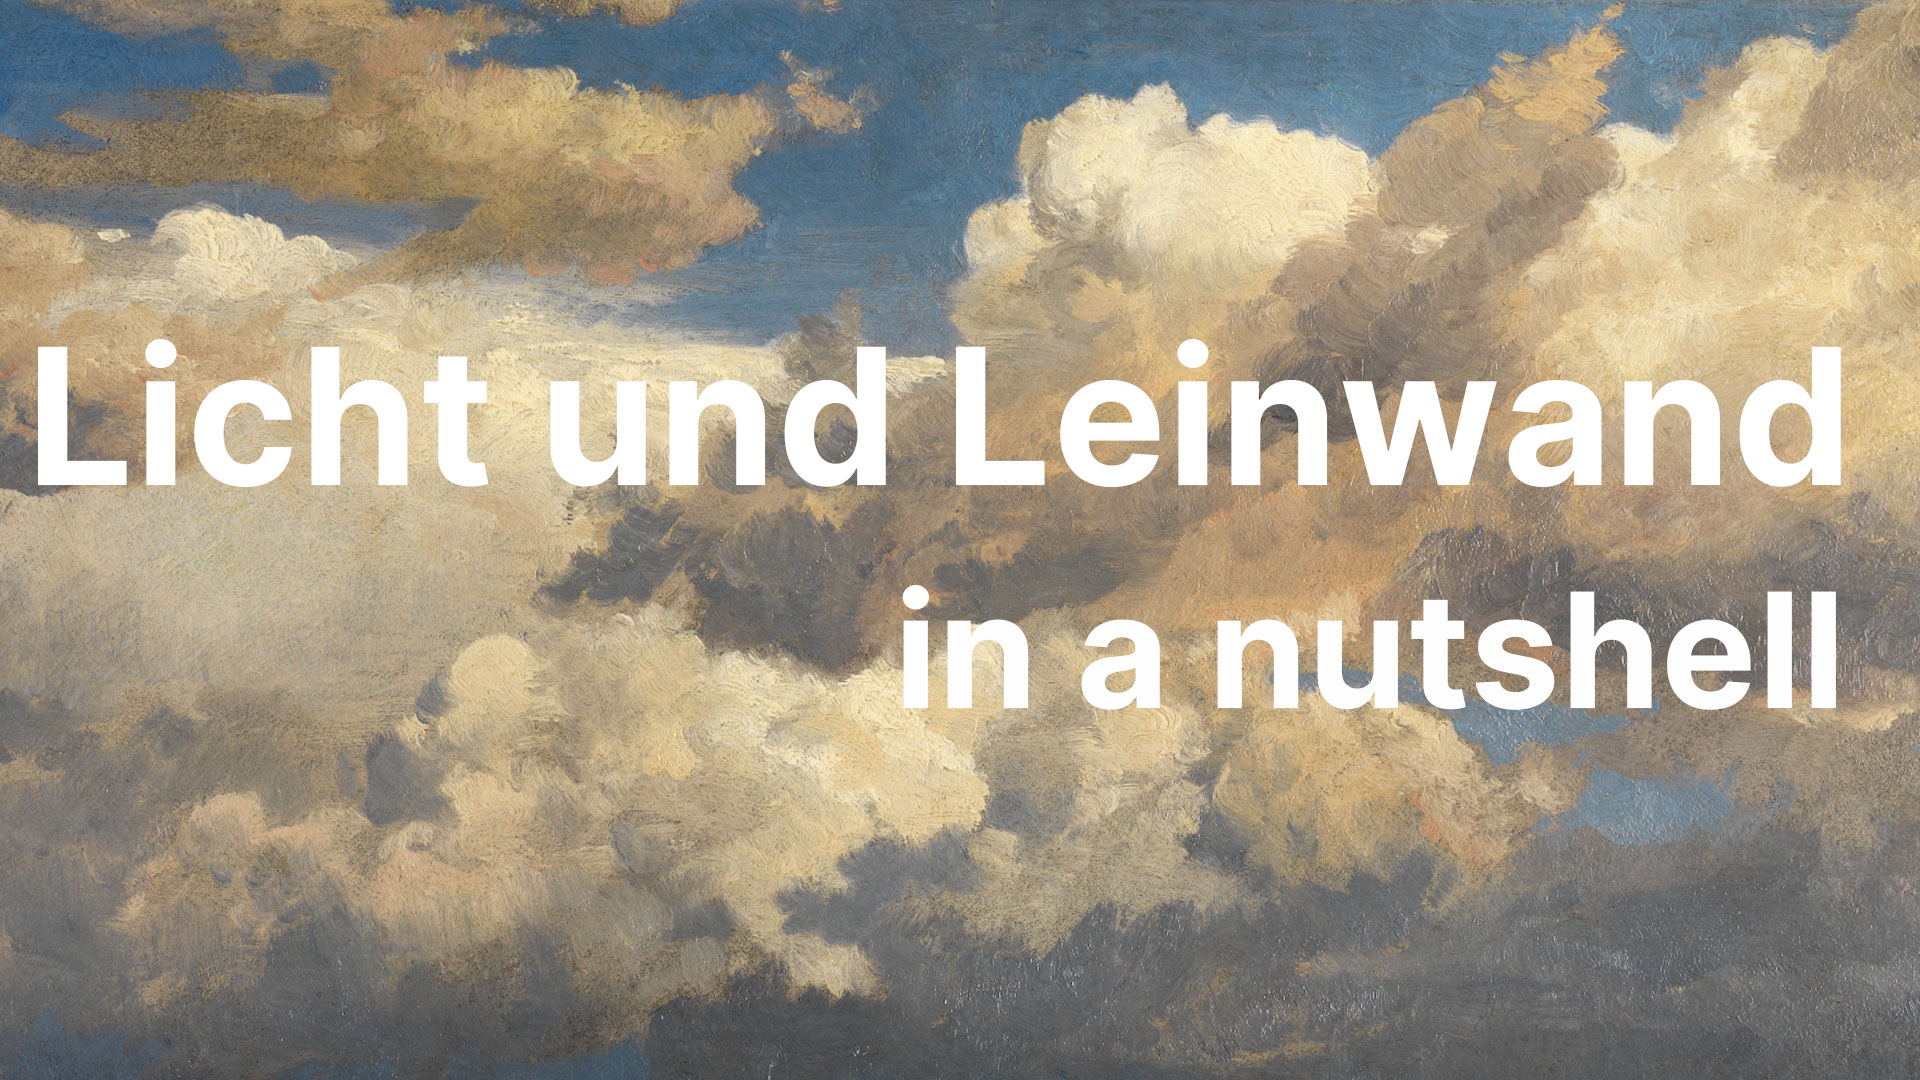 Abbildung des Werks "Wolkenstudie" von Johann Wilhelm Schirmer und mit dem Schriftzug Licht und Leinwand in a nutshell